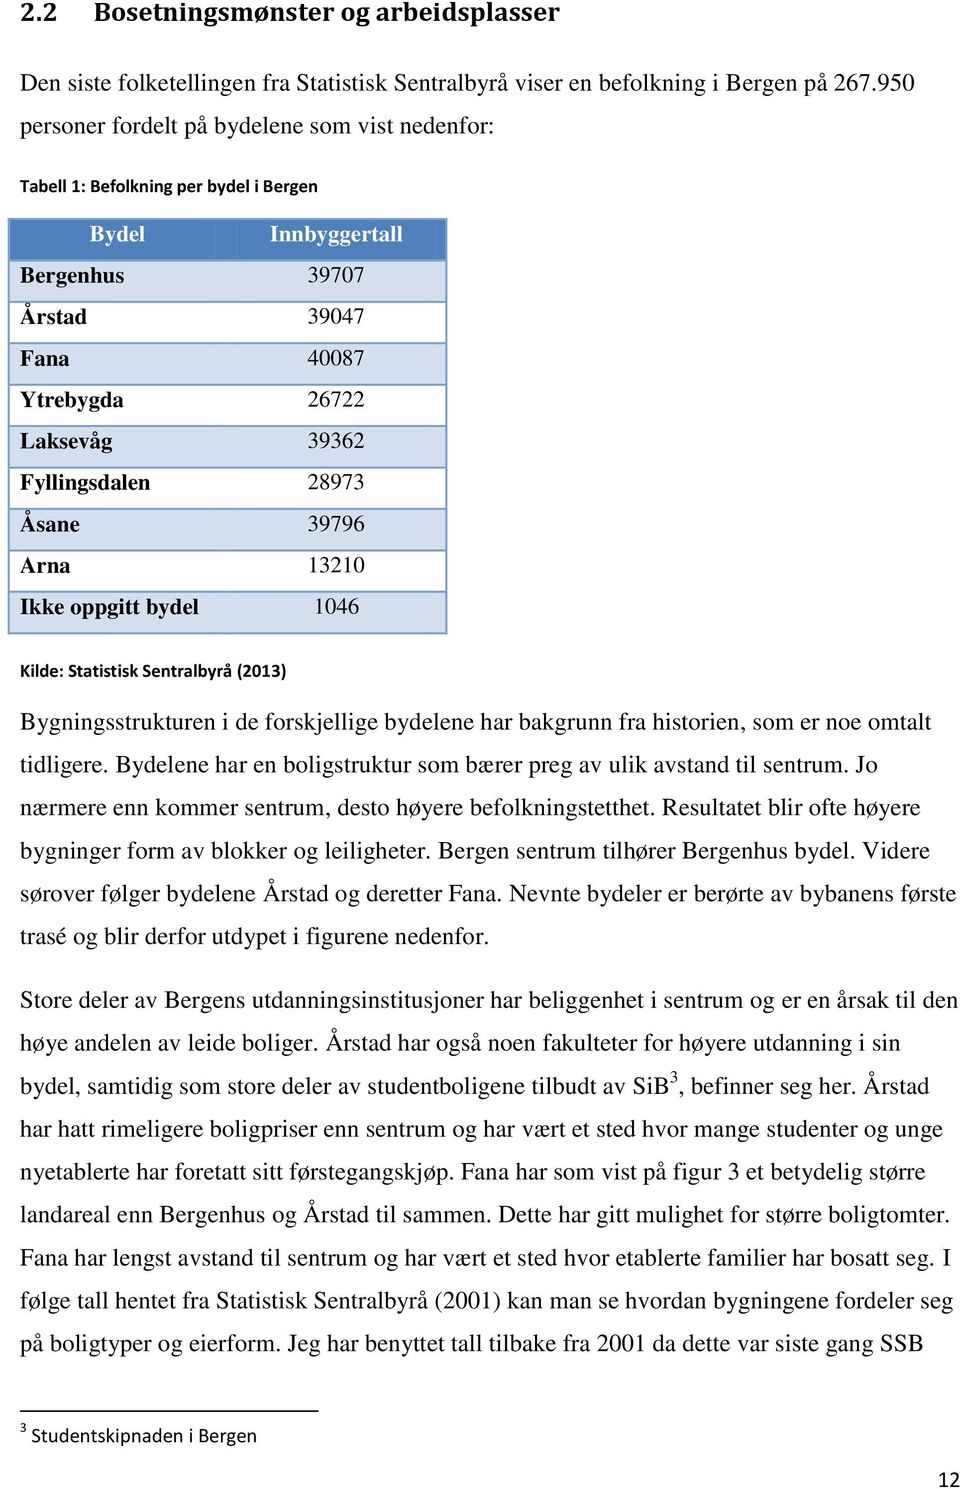 28973 Åsane 39796 Arna 13210 Ikke oppgitt bydel 1046 Kilde: Statistisk Sentralbyrå (2013) Bygningsstrukturen i de forskjellige bydelene har bakgrunn fra historien, som er noe omtalt tidligere.